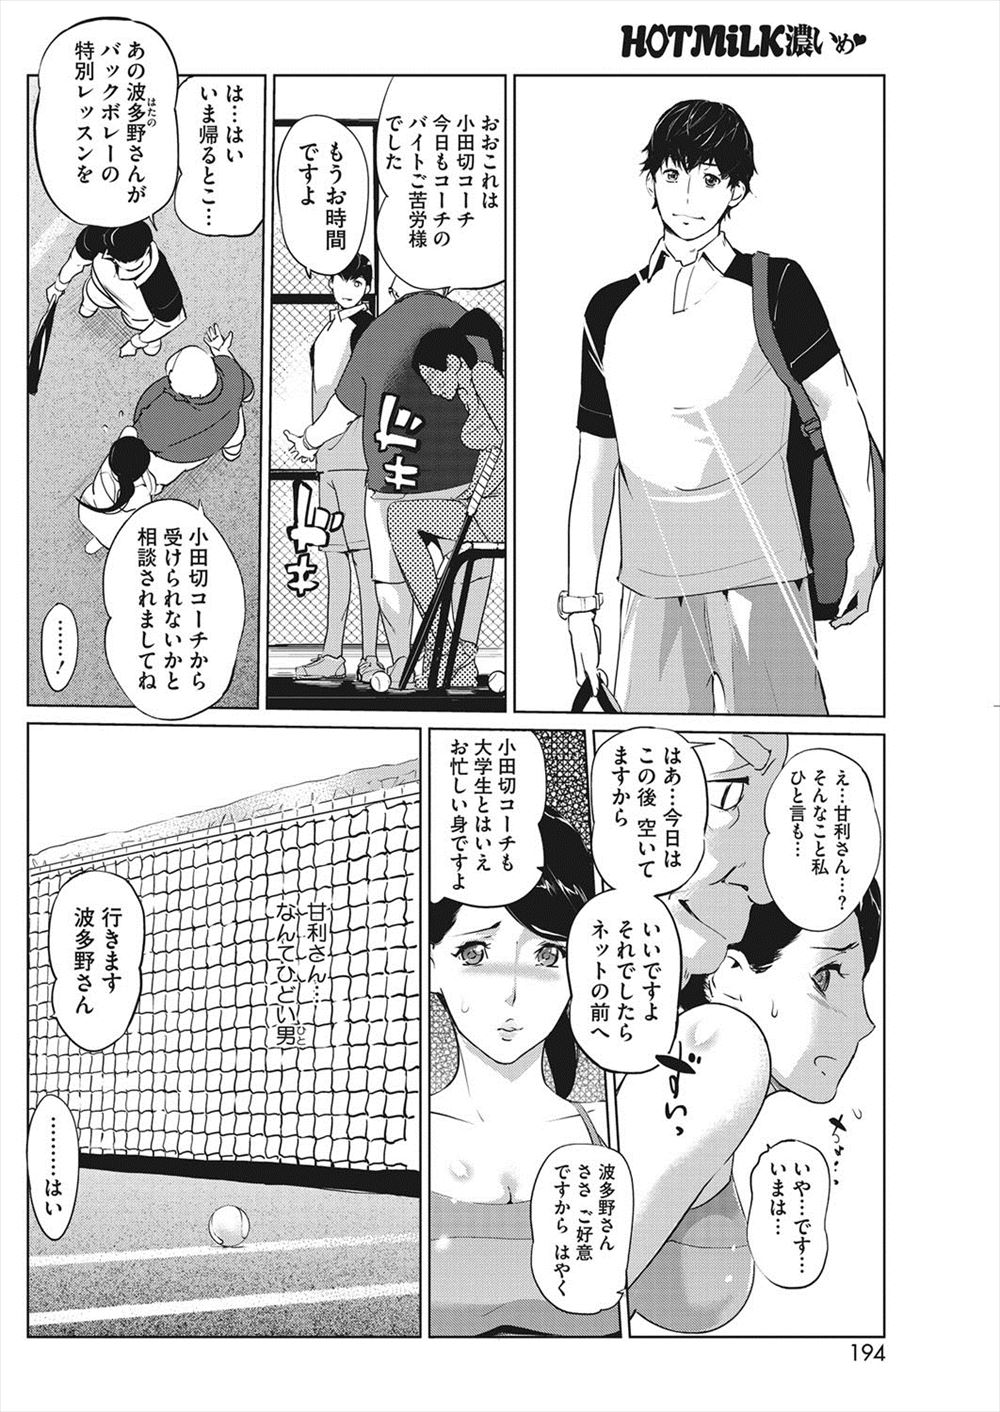 テニスサークルのイケメン大学生コーチが鬼畜男たちと裏で手を組んでいて、人妻たちを罠にはめ犯しまくり孕ませまくっている！